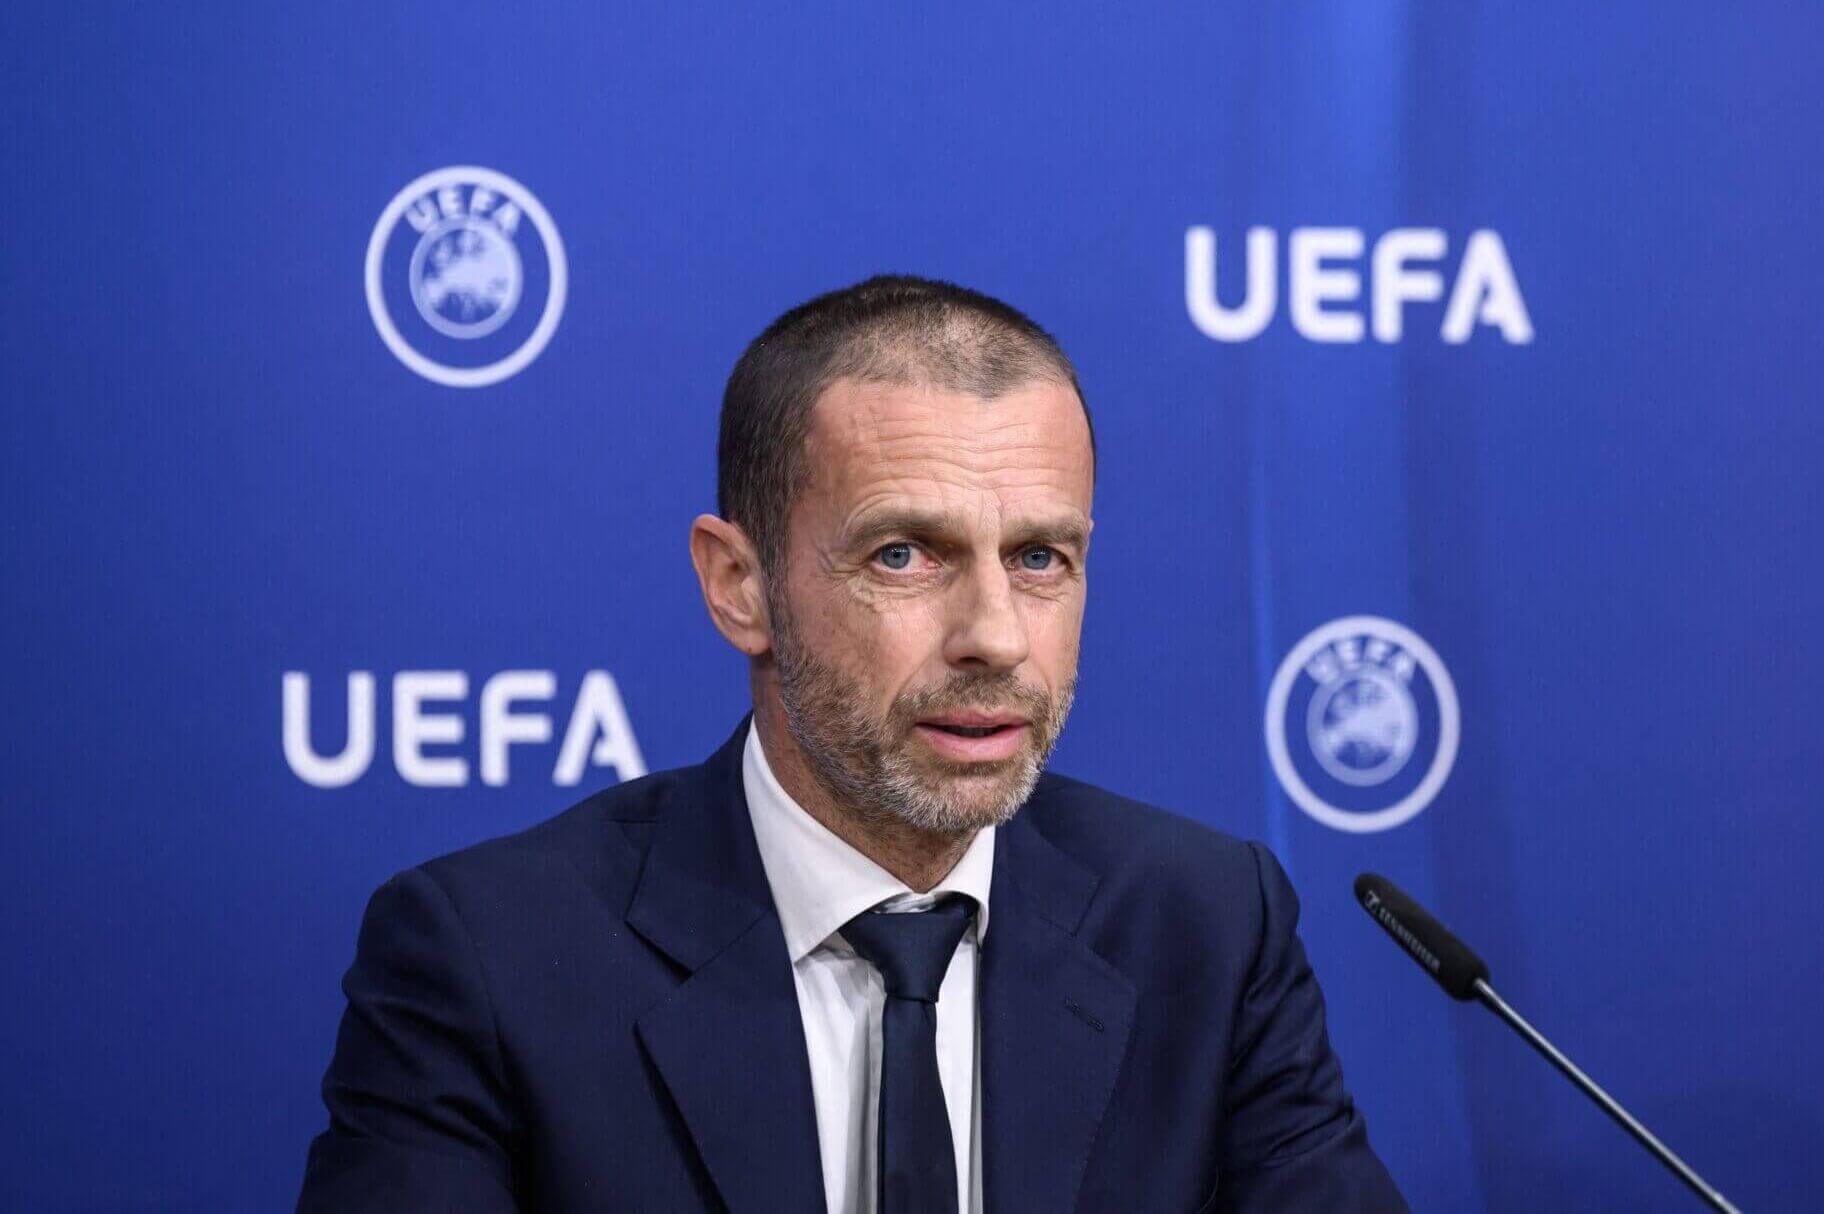 Chủ tịch UEFA là Aleksander Ceferin đang mất uy tín nghiêm trọng